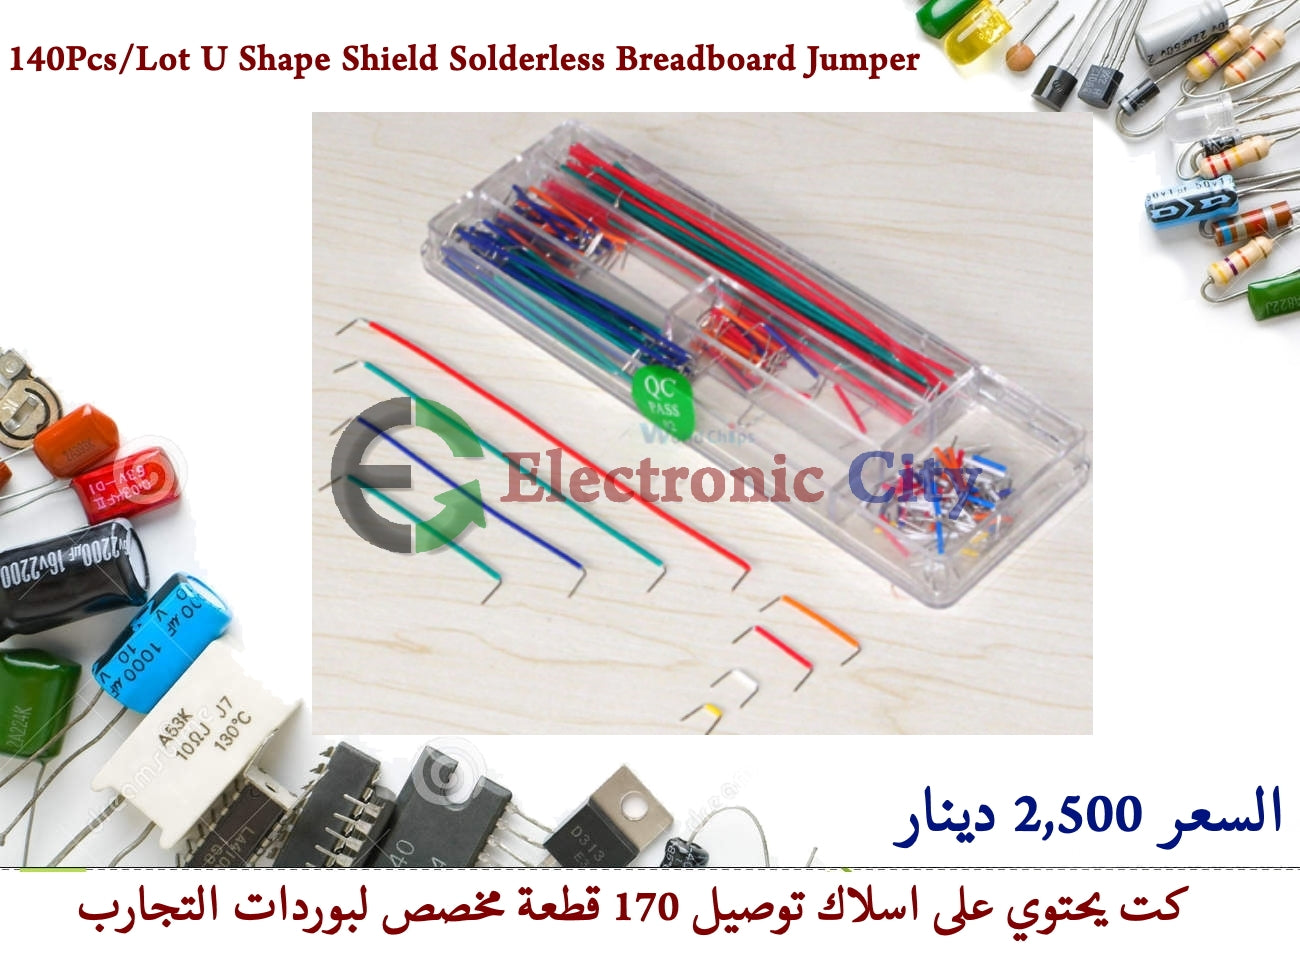 140Pcs/Lot U Shape Shield Solderless Breadboard Jumper #B4 050001